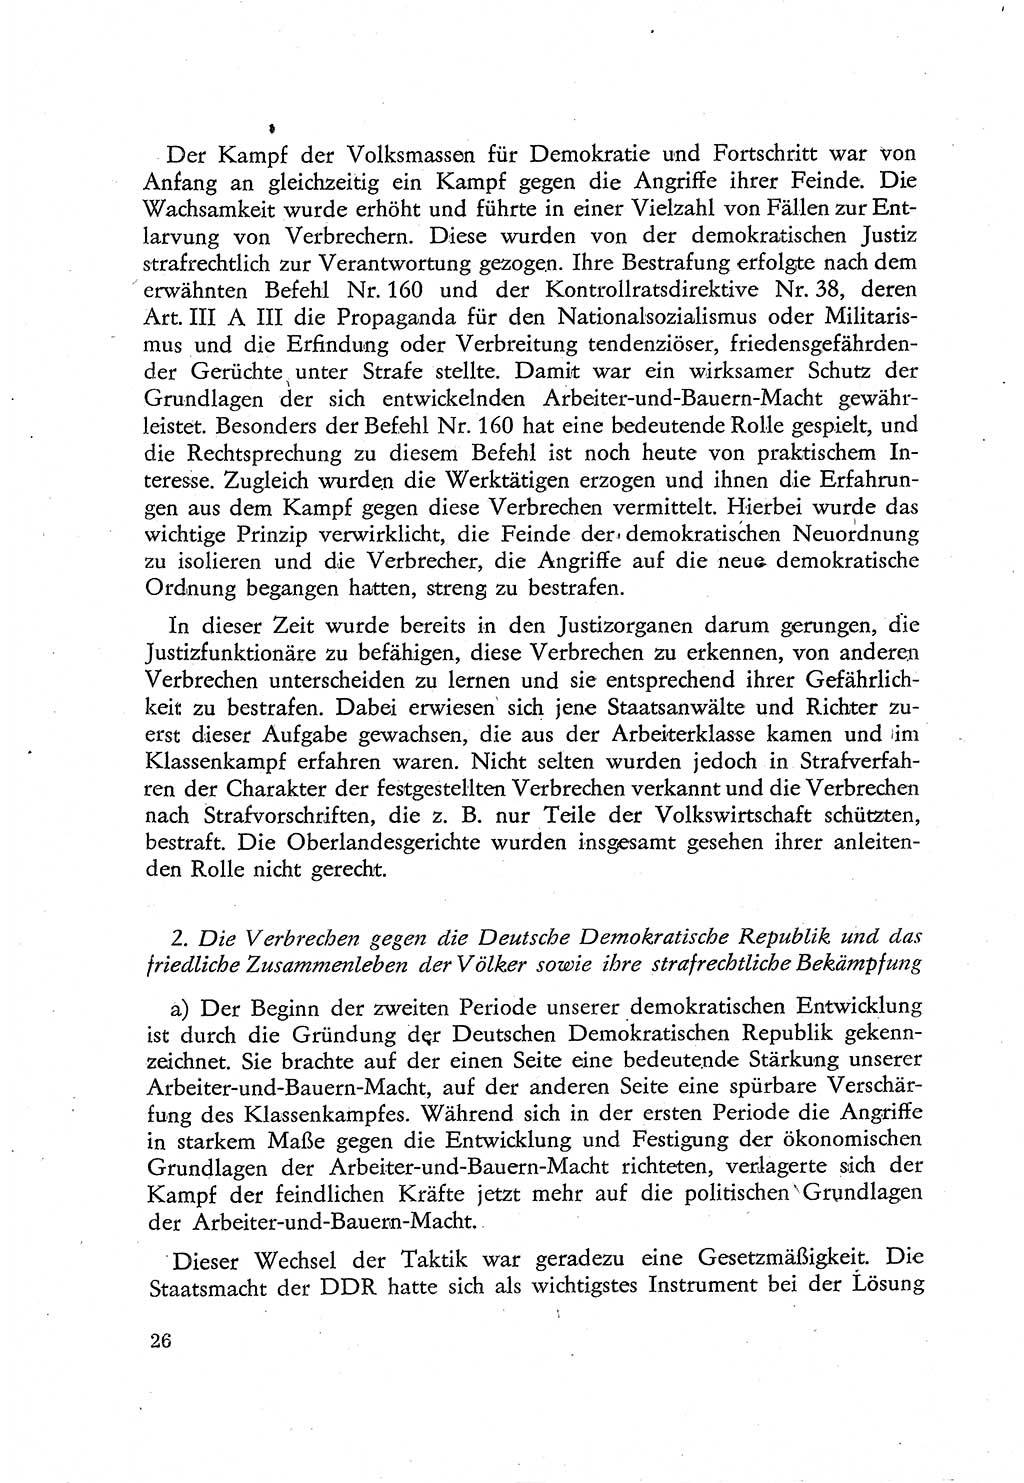 Beiträge zum Strafrecht [Deutsche Demokratische Republik (DDR)], Staatsverbrechen 1959, Seite 26 (Beitr. Strafr. DDR St.-Verbr. 1959, S. 26)